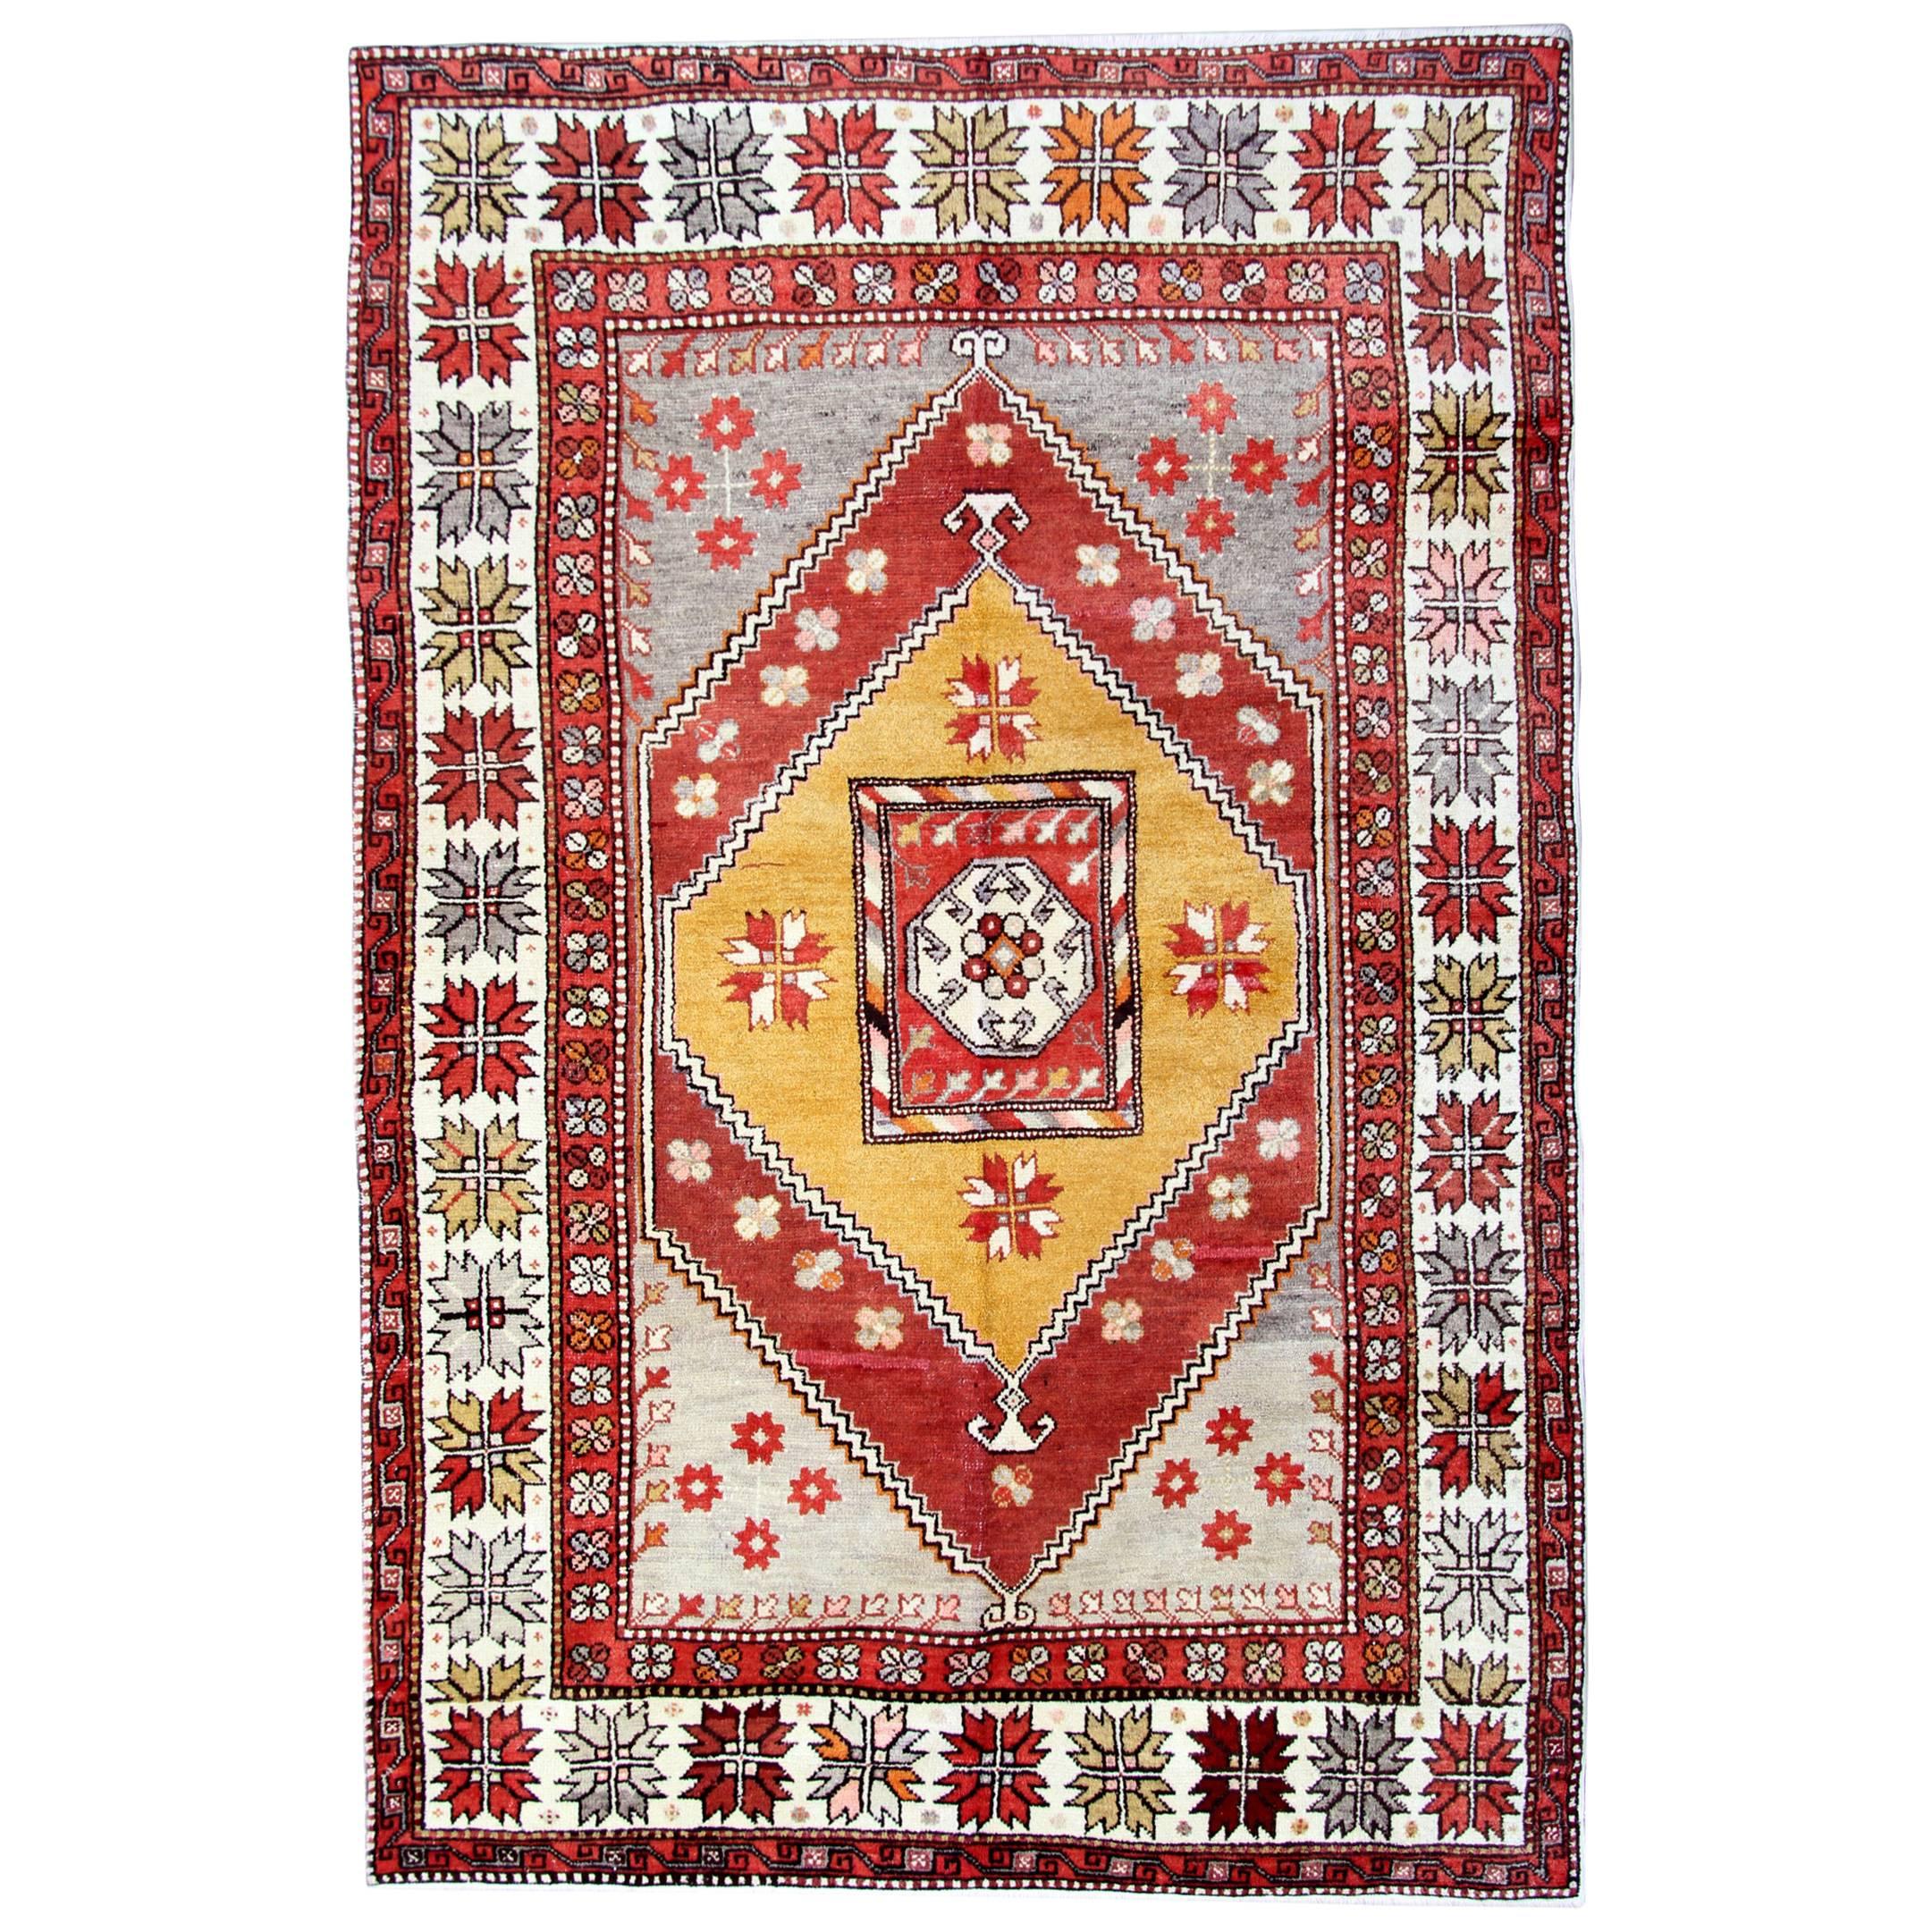 Tapis anciens Milas, tapis de Turquie jaune tapis artisanal, tapis d'Orient en vente